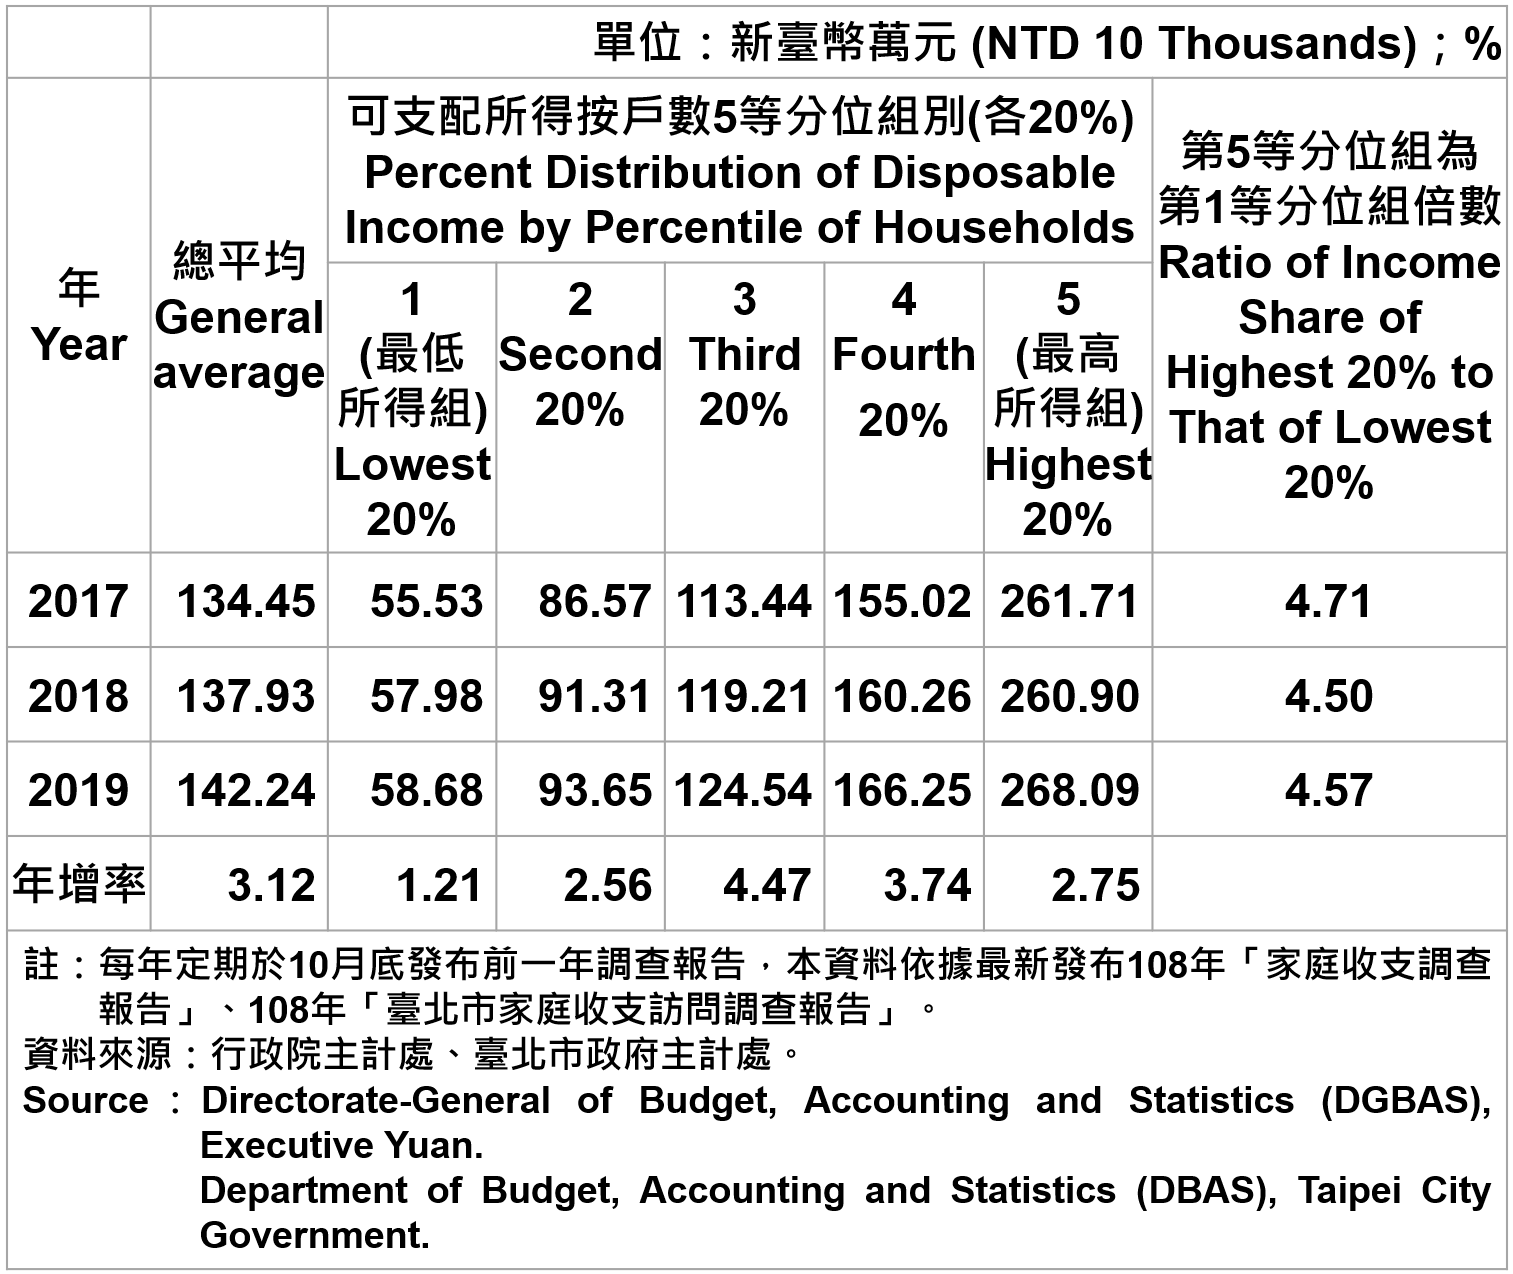 臺北市戶數五等分位組之平均每戶可支配所得—2019 Average Family Income and Expenditure per Household by Five Equal In Taipei—2019